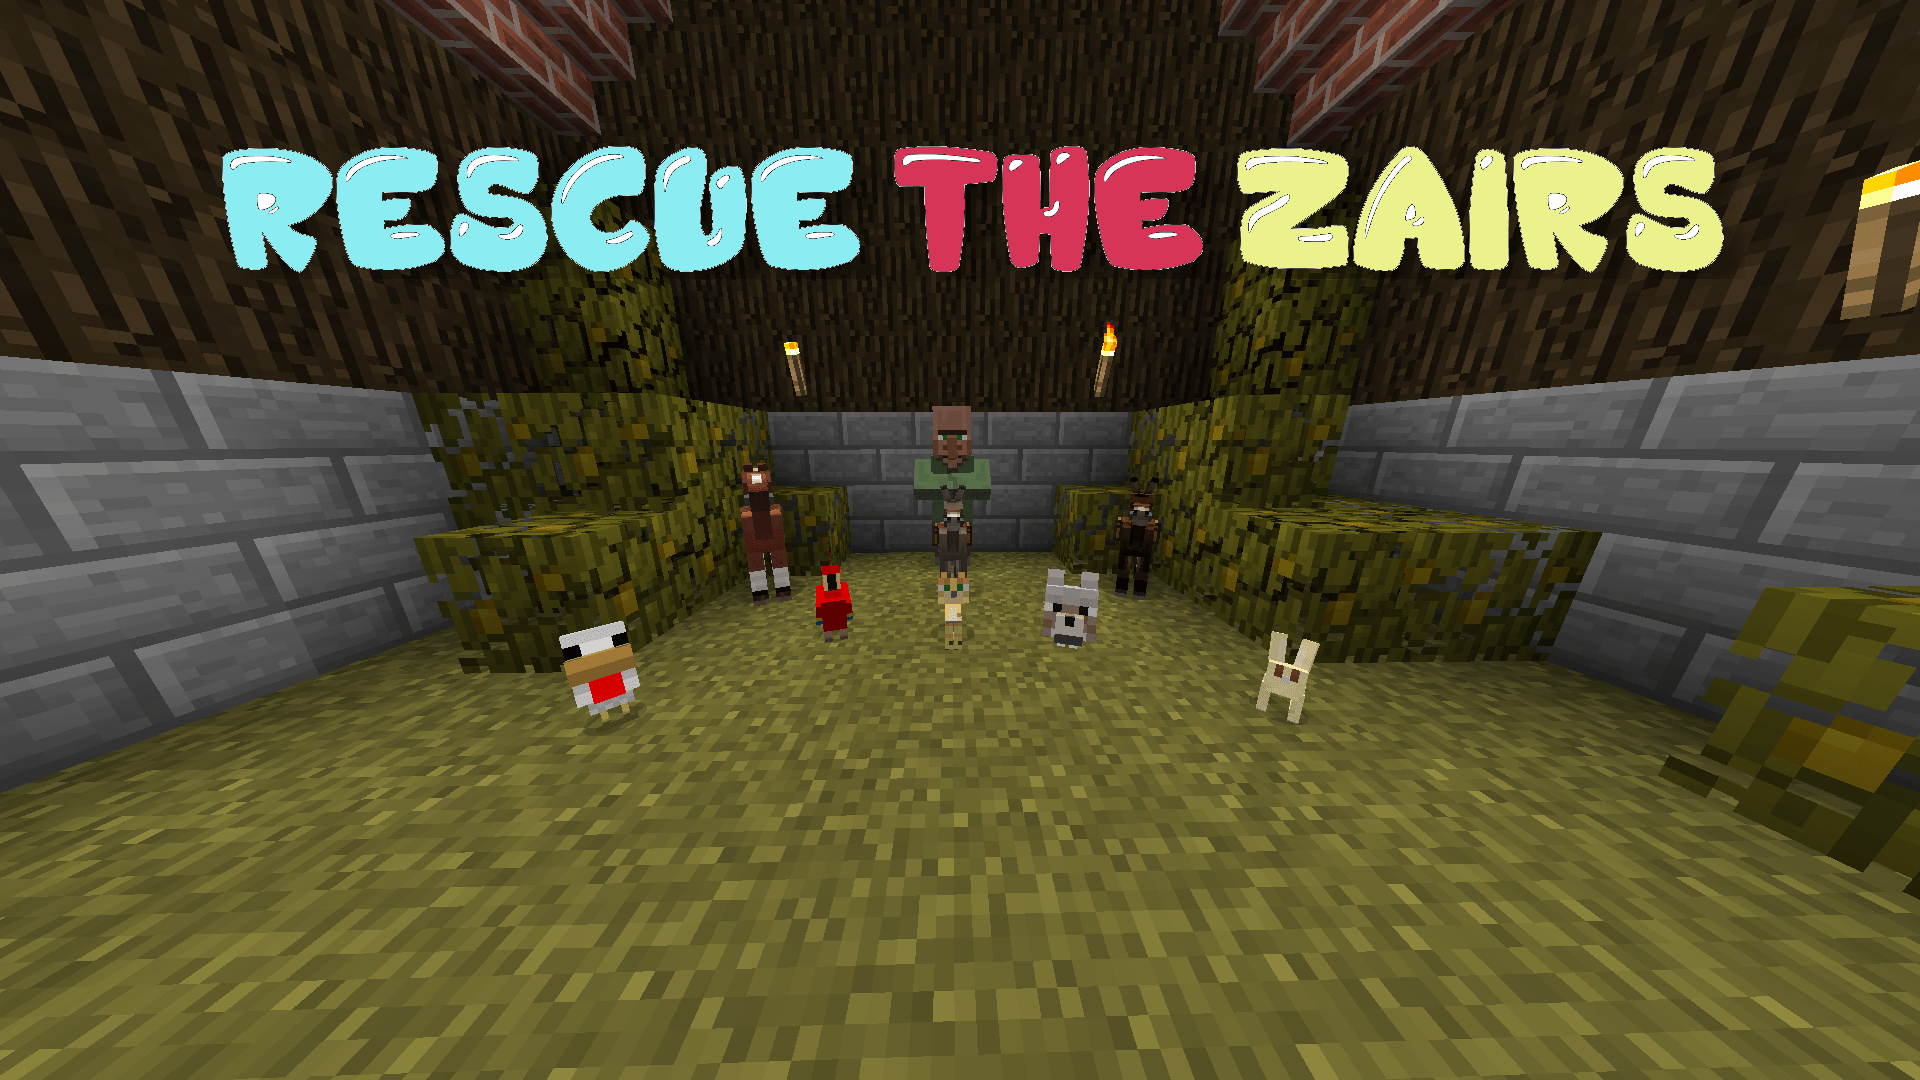 İndir Rescue The Zairs için Minecraft 1.13.2